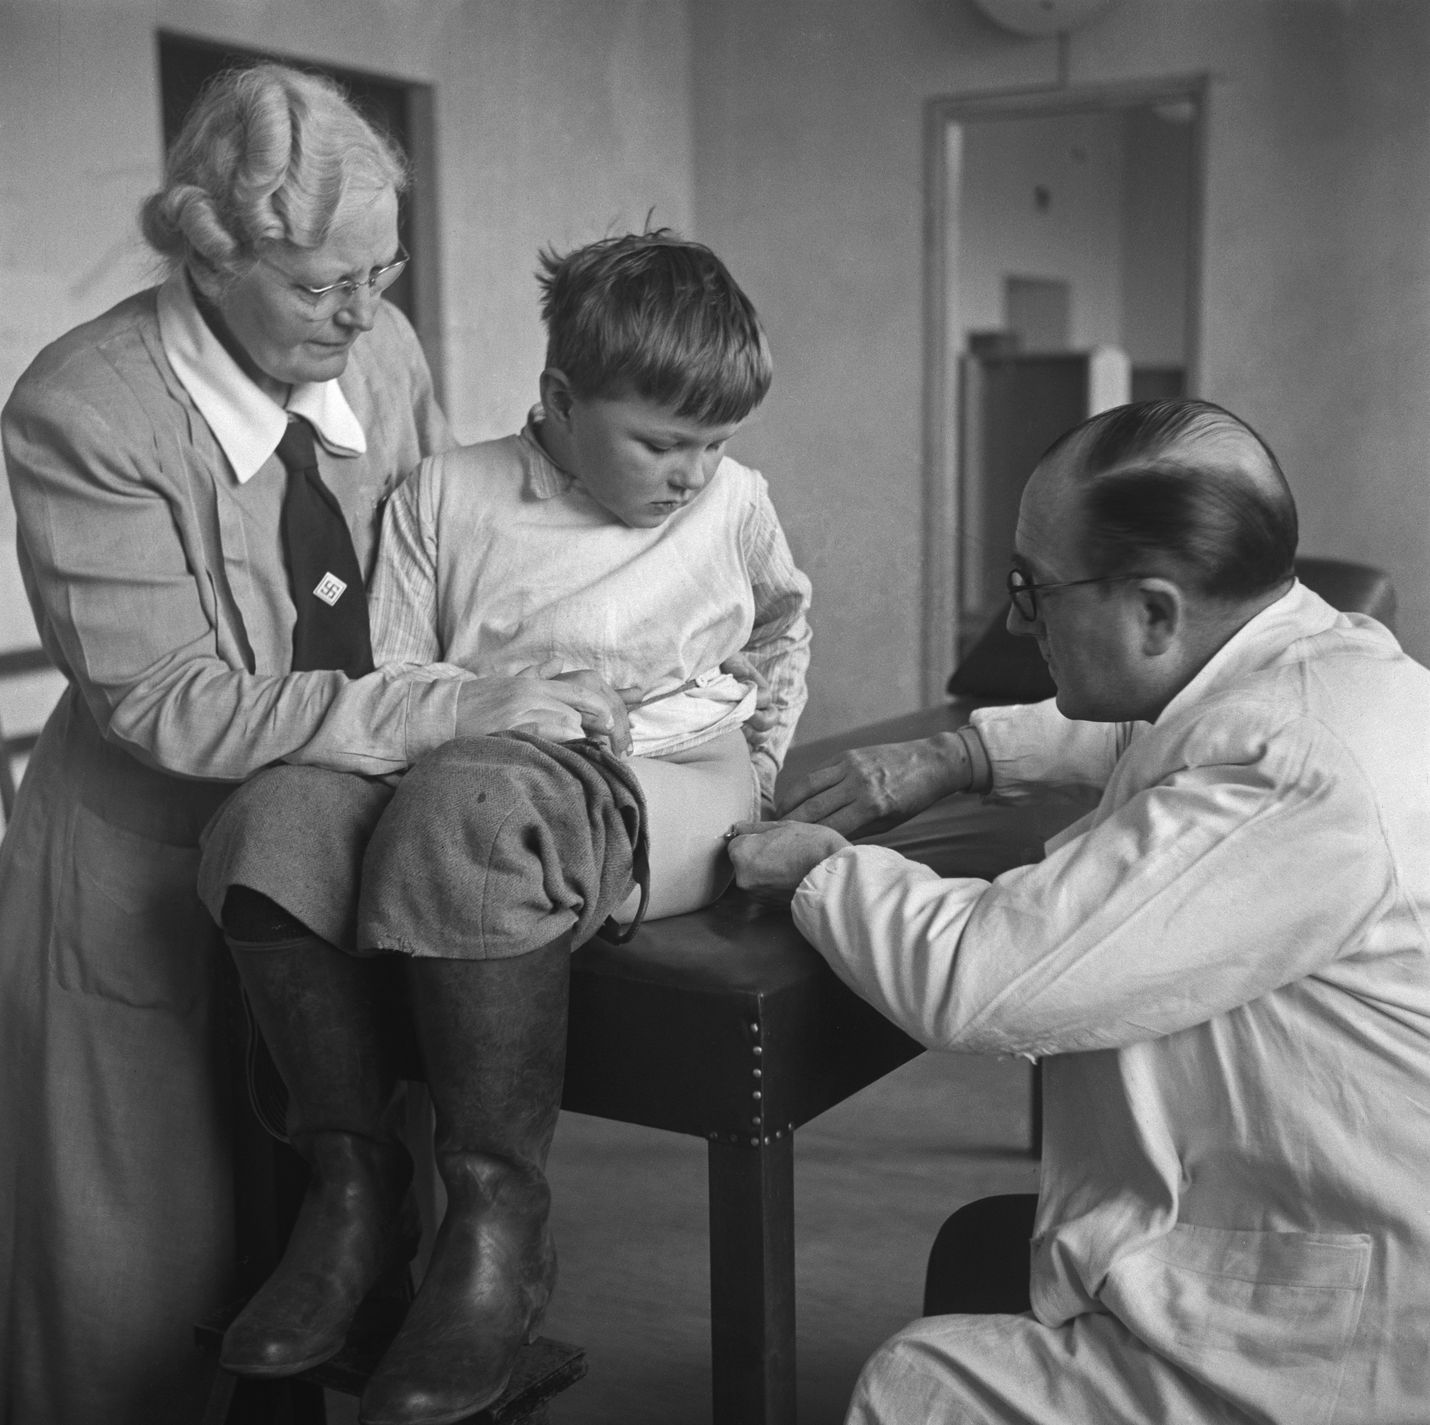 Suomessa ensimmäiset isorokkorokotukset otettiin käyttöön jo 1802. Rokotukset tuberkuloosia vastaan alkoivat 1941 ja kurkkumätää vastaan 1943. Kuvassa lapsi saa rokotuksen terveystarkastuksessa Aleksis Kiven koulussa Helsingissä 1949.